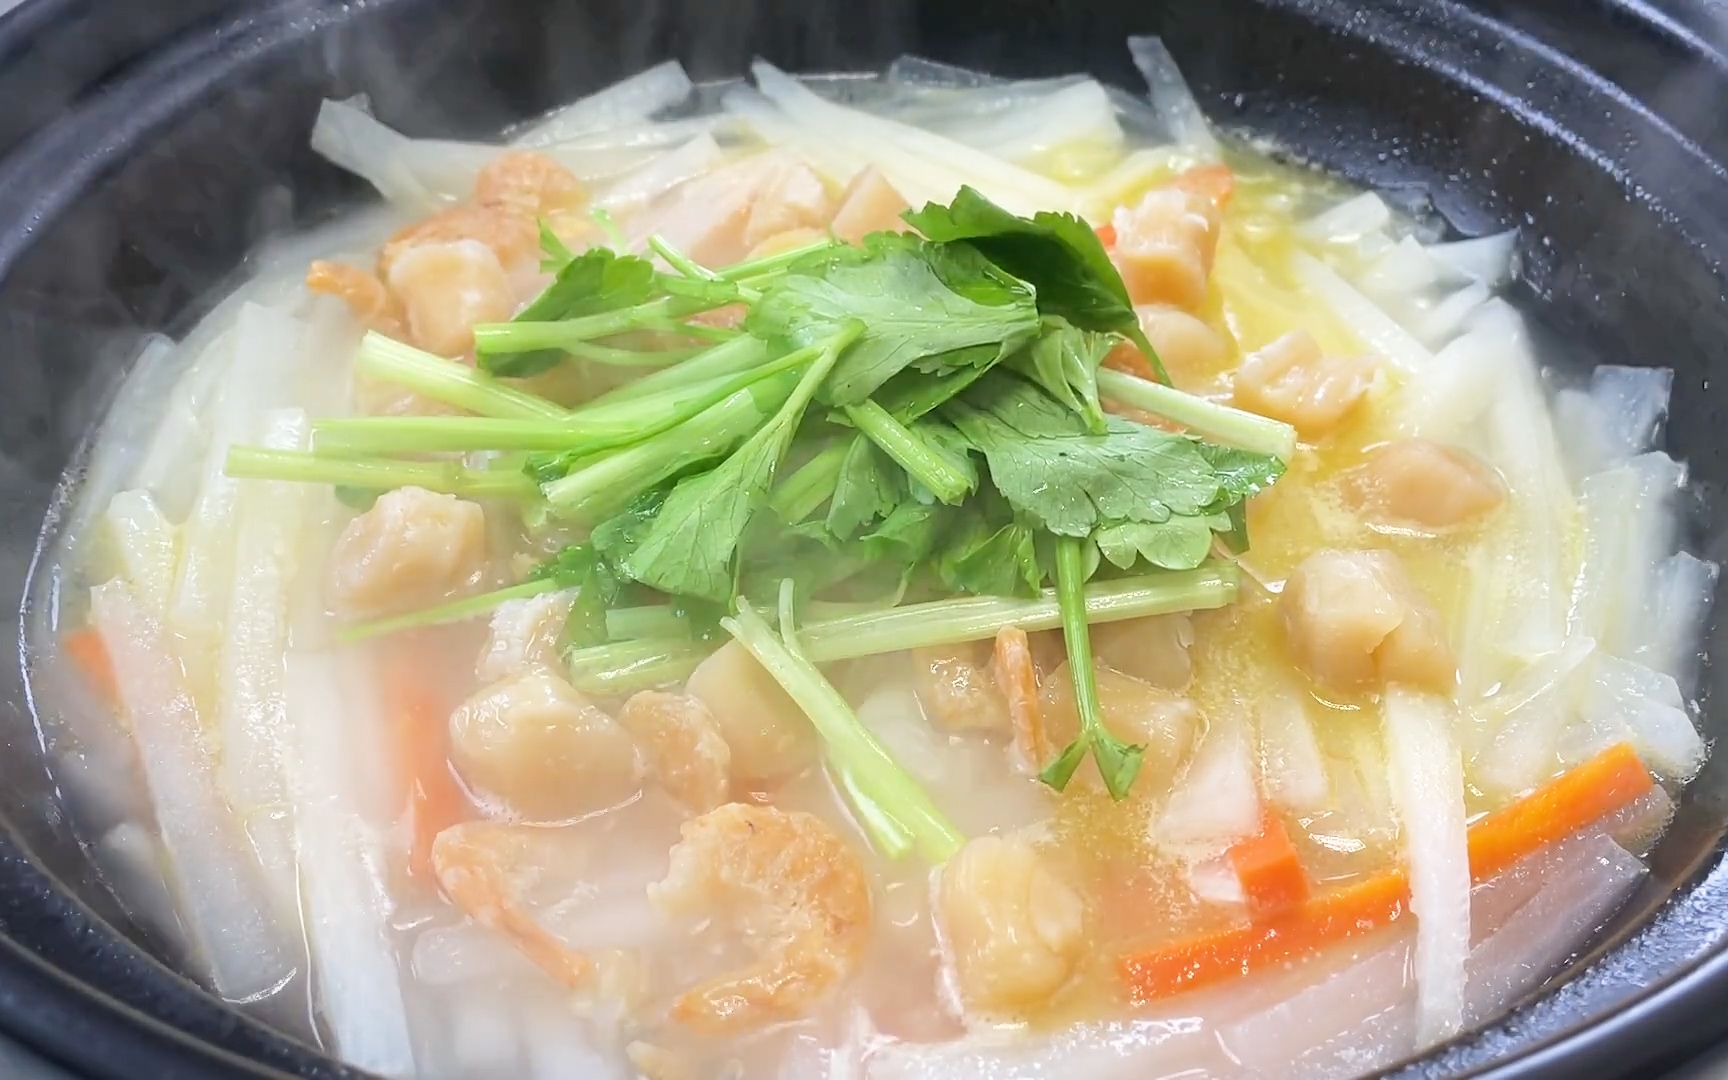 冬吃萝卜夏吃姜,今天用干贝做了萝卜砂锅煲,简单美味太好吃了